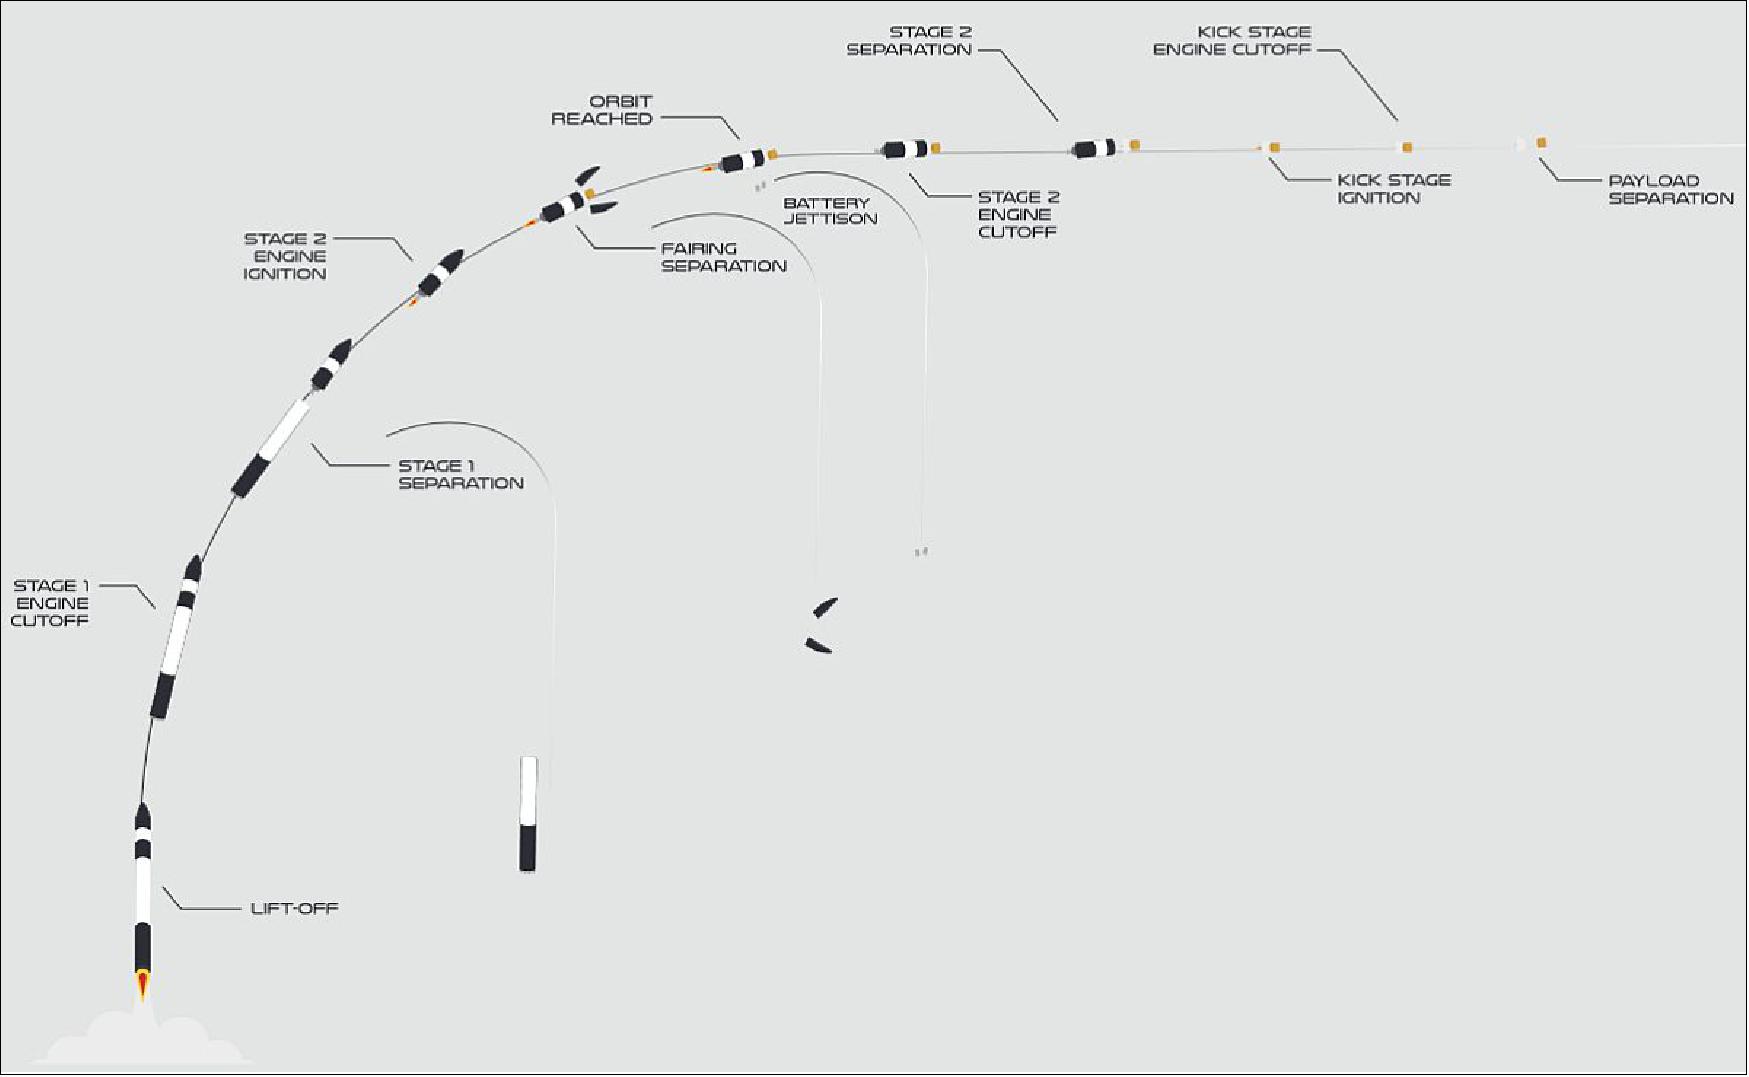 Figure 45: Illustration of the varies stages during ascend (image credit: Rocket Lab)